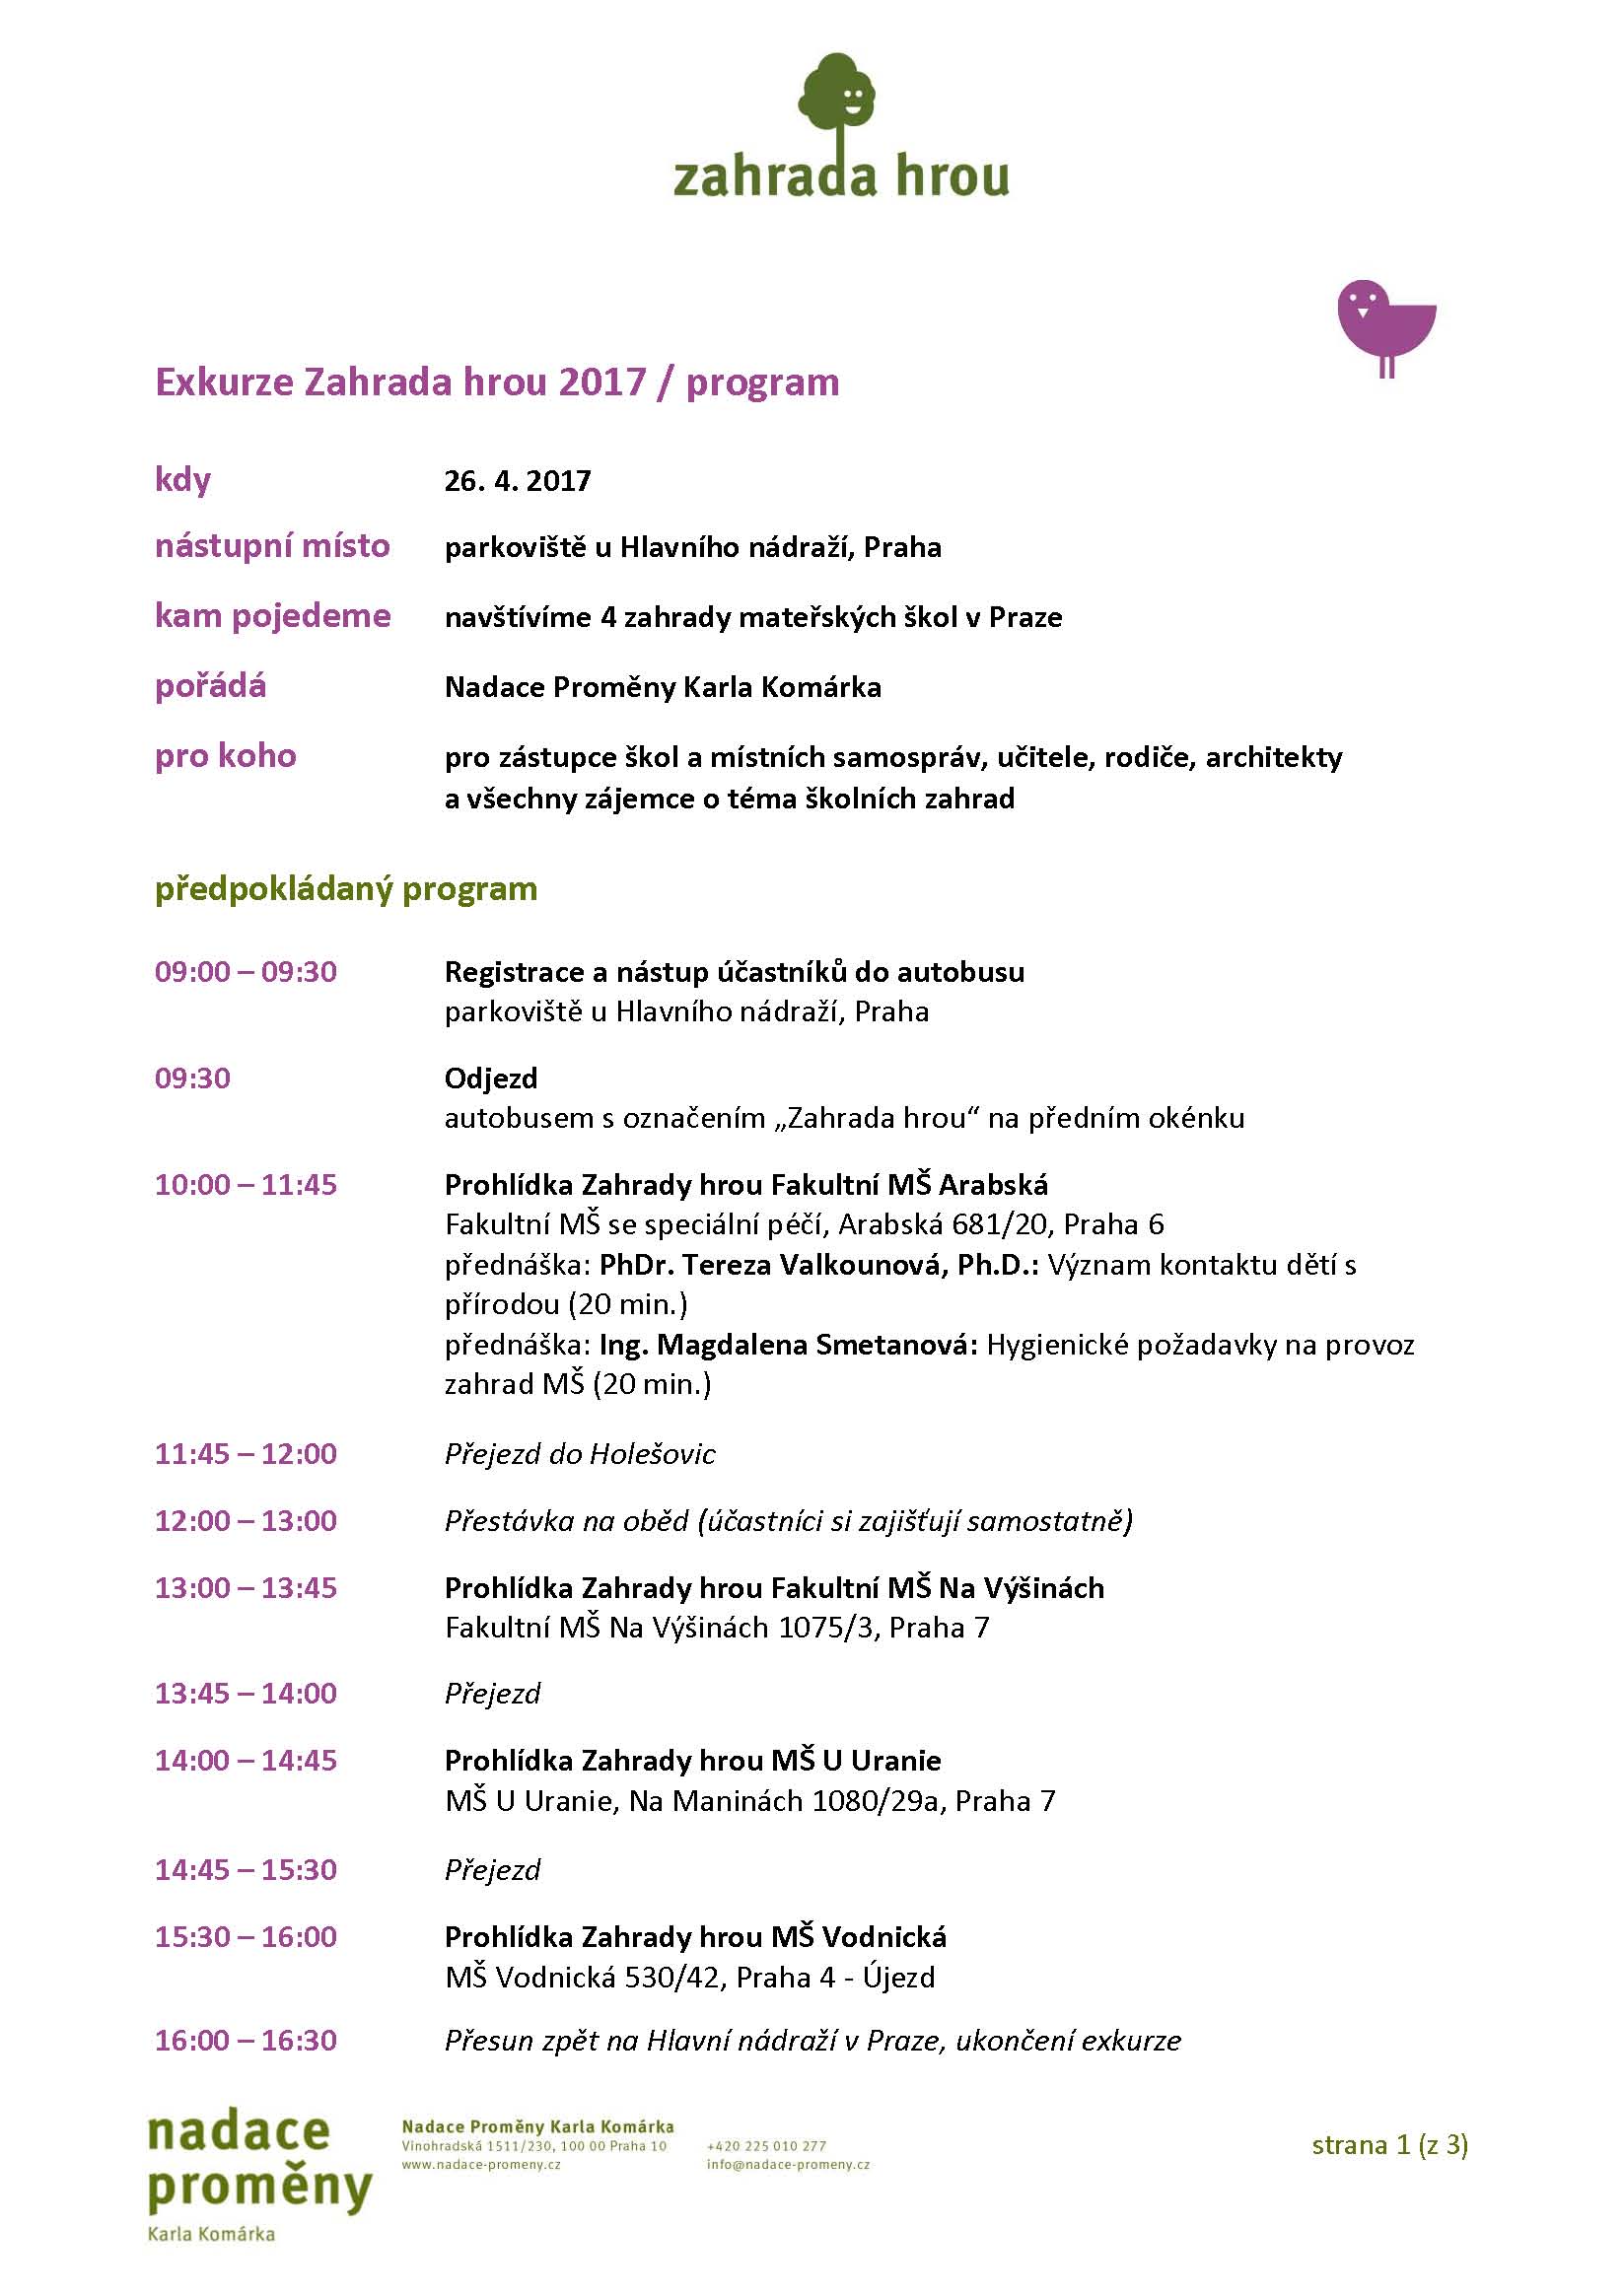 EXKURZE ZAHRADA HROU 2017 program Page 1